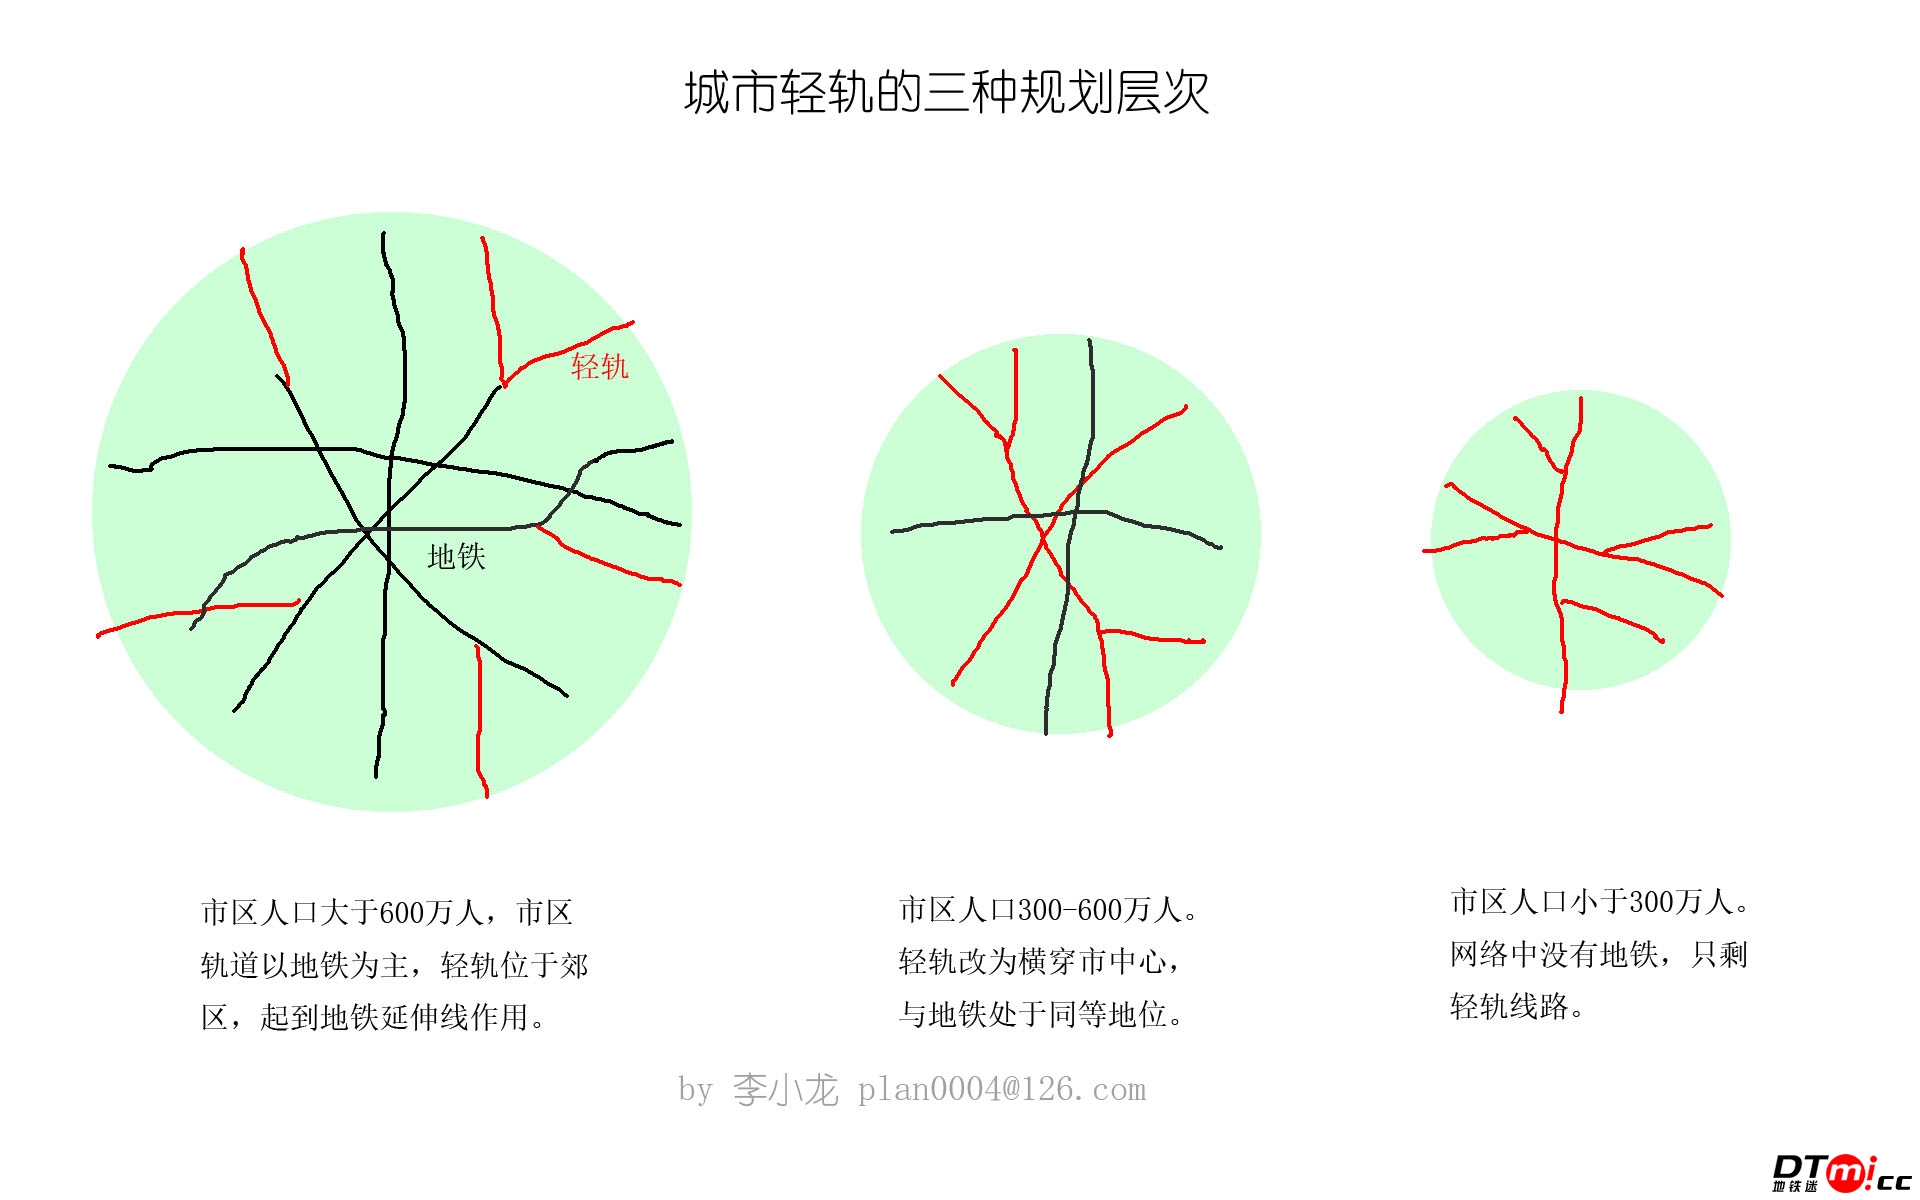 城市轻轨规划三种层次.jpg